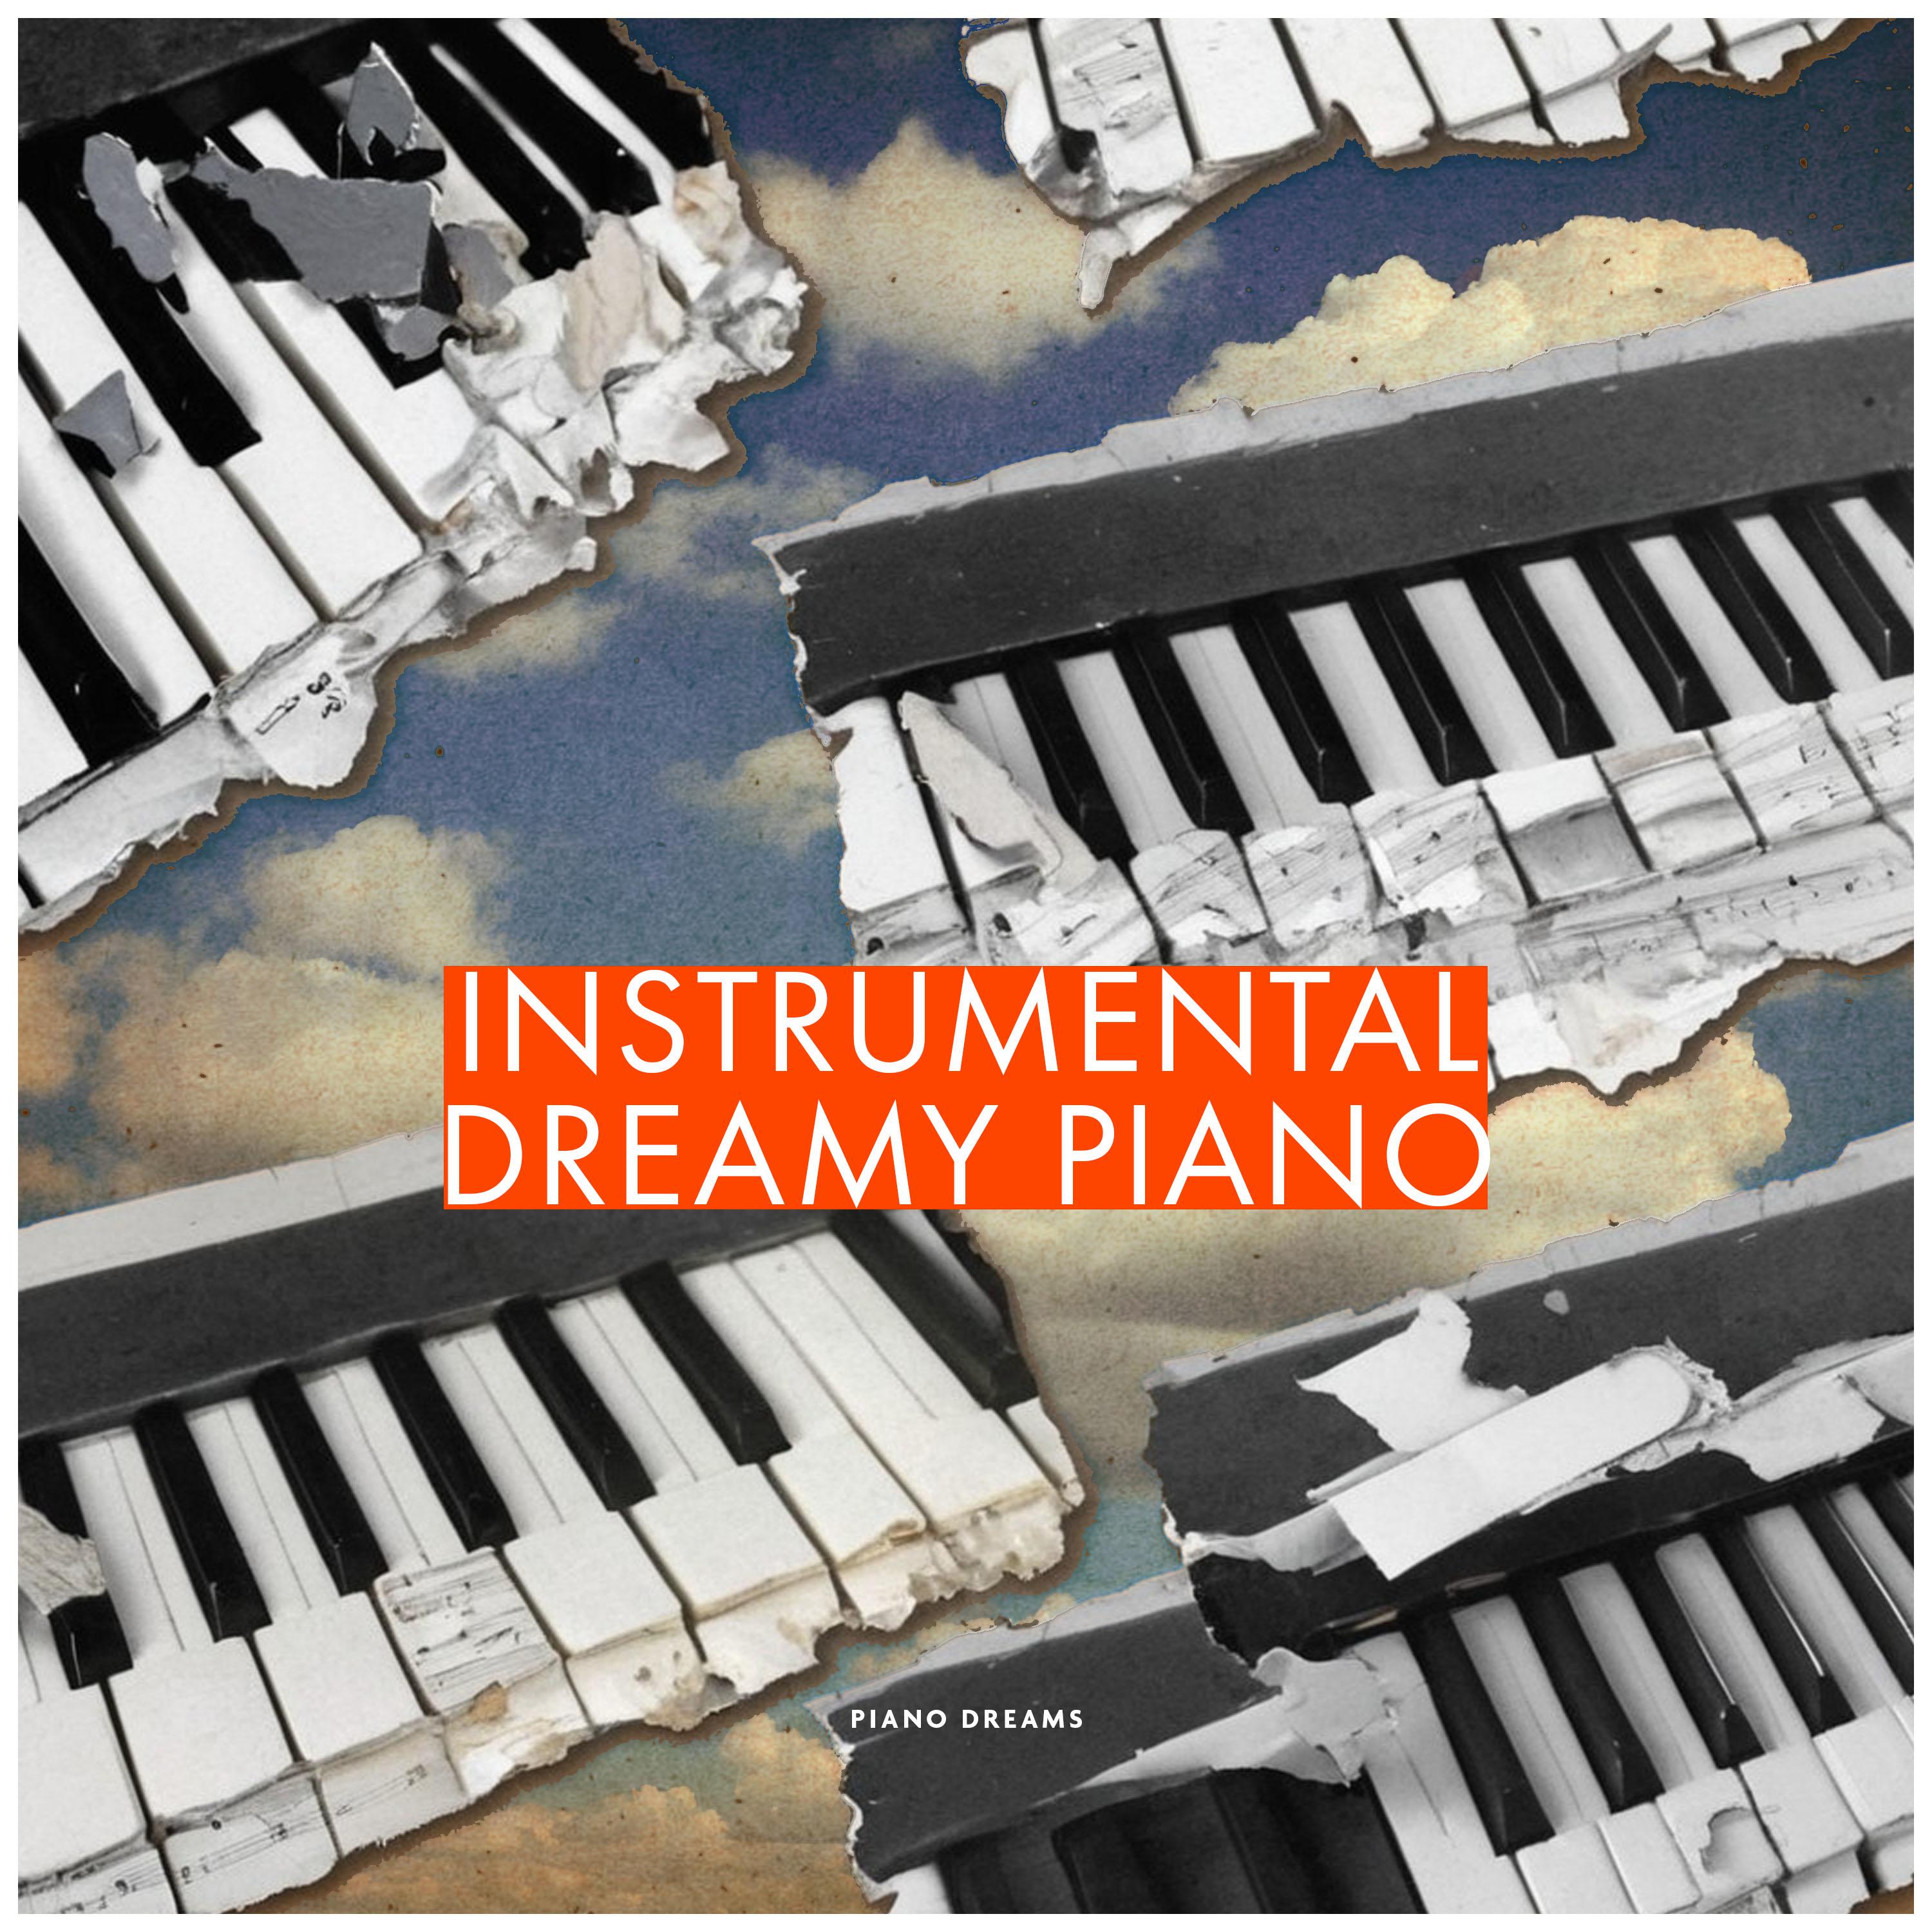 Piano Dreams - By Hum